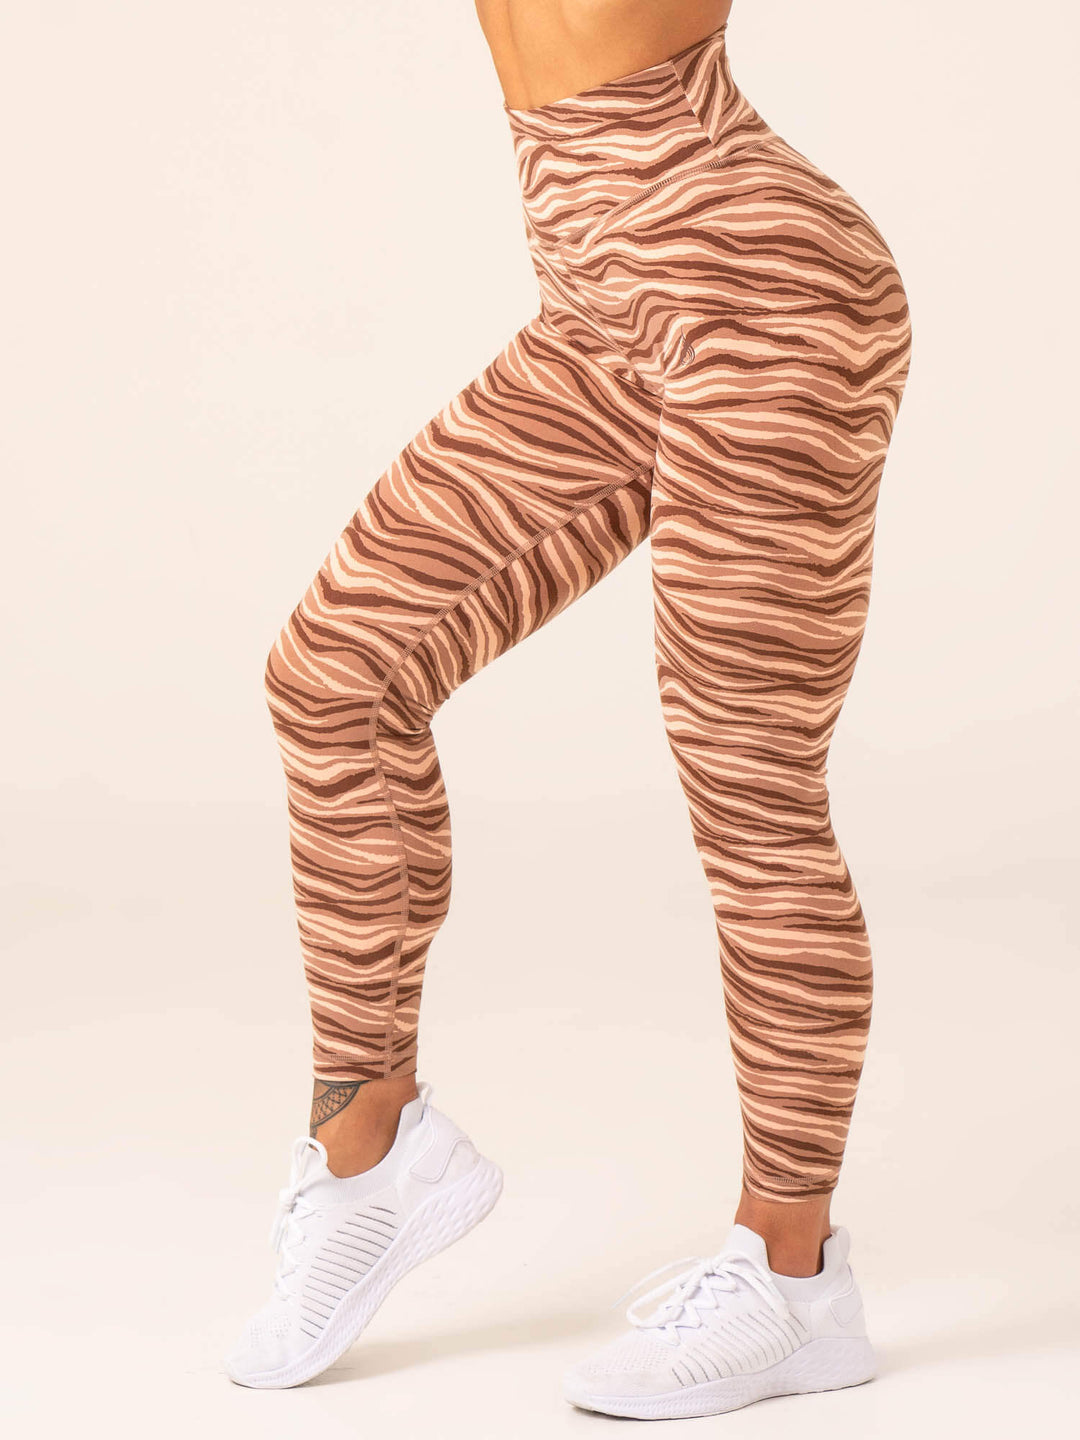 Unstoppable High Waisted Scrunch Leggings - Mocha Zebra Clothing Ryderwear 